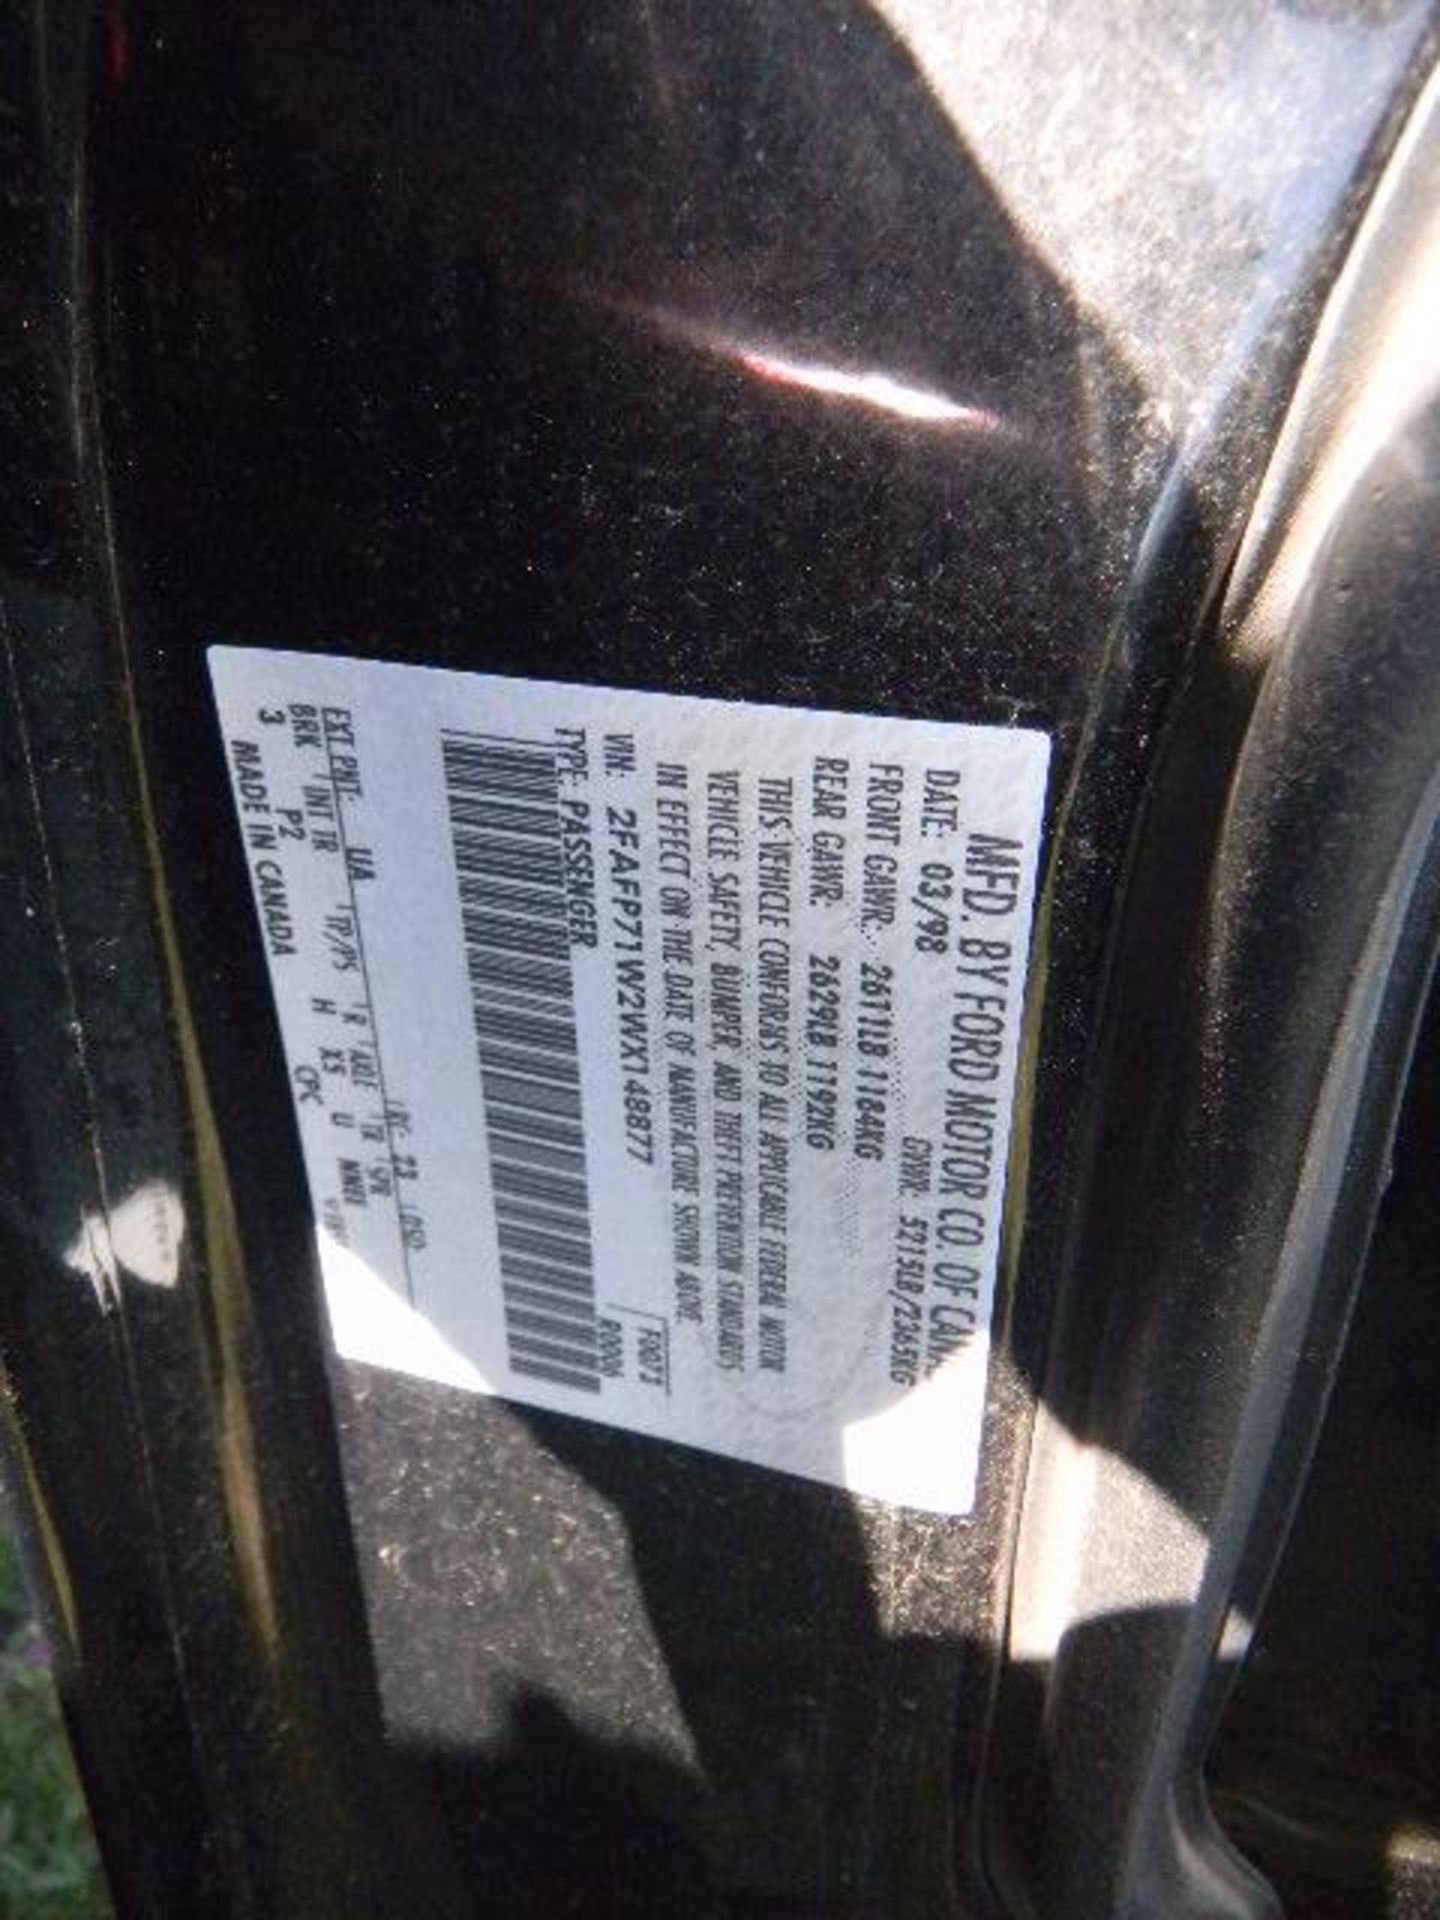 1998 Ford Crown Vic SOLID Black Patrol Car - Asset I.D. #835 - Last of Vin (X148877) - Image 5 of 5